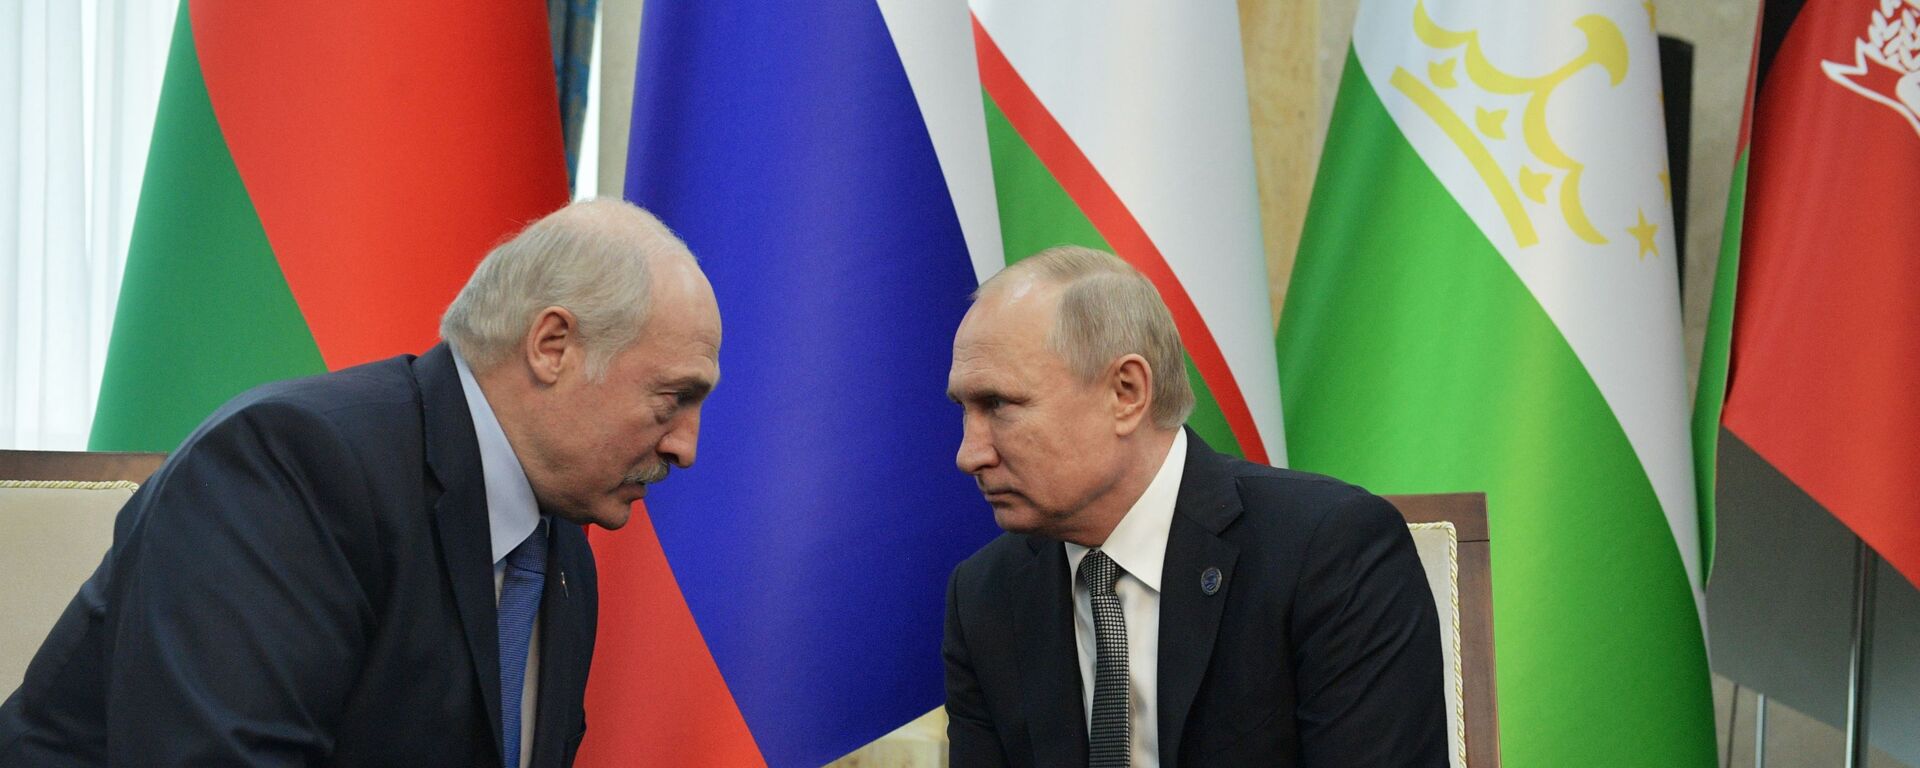 Alexandr Lukashenko, presidente de Bielorrusia, y Vladímir Putin, presidente de Rusia - Sputnik Mundo, 1920, 03.05.2022